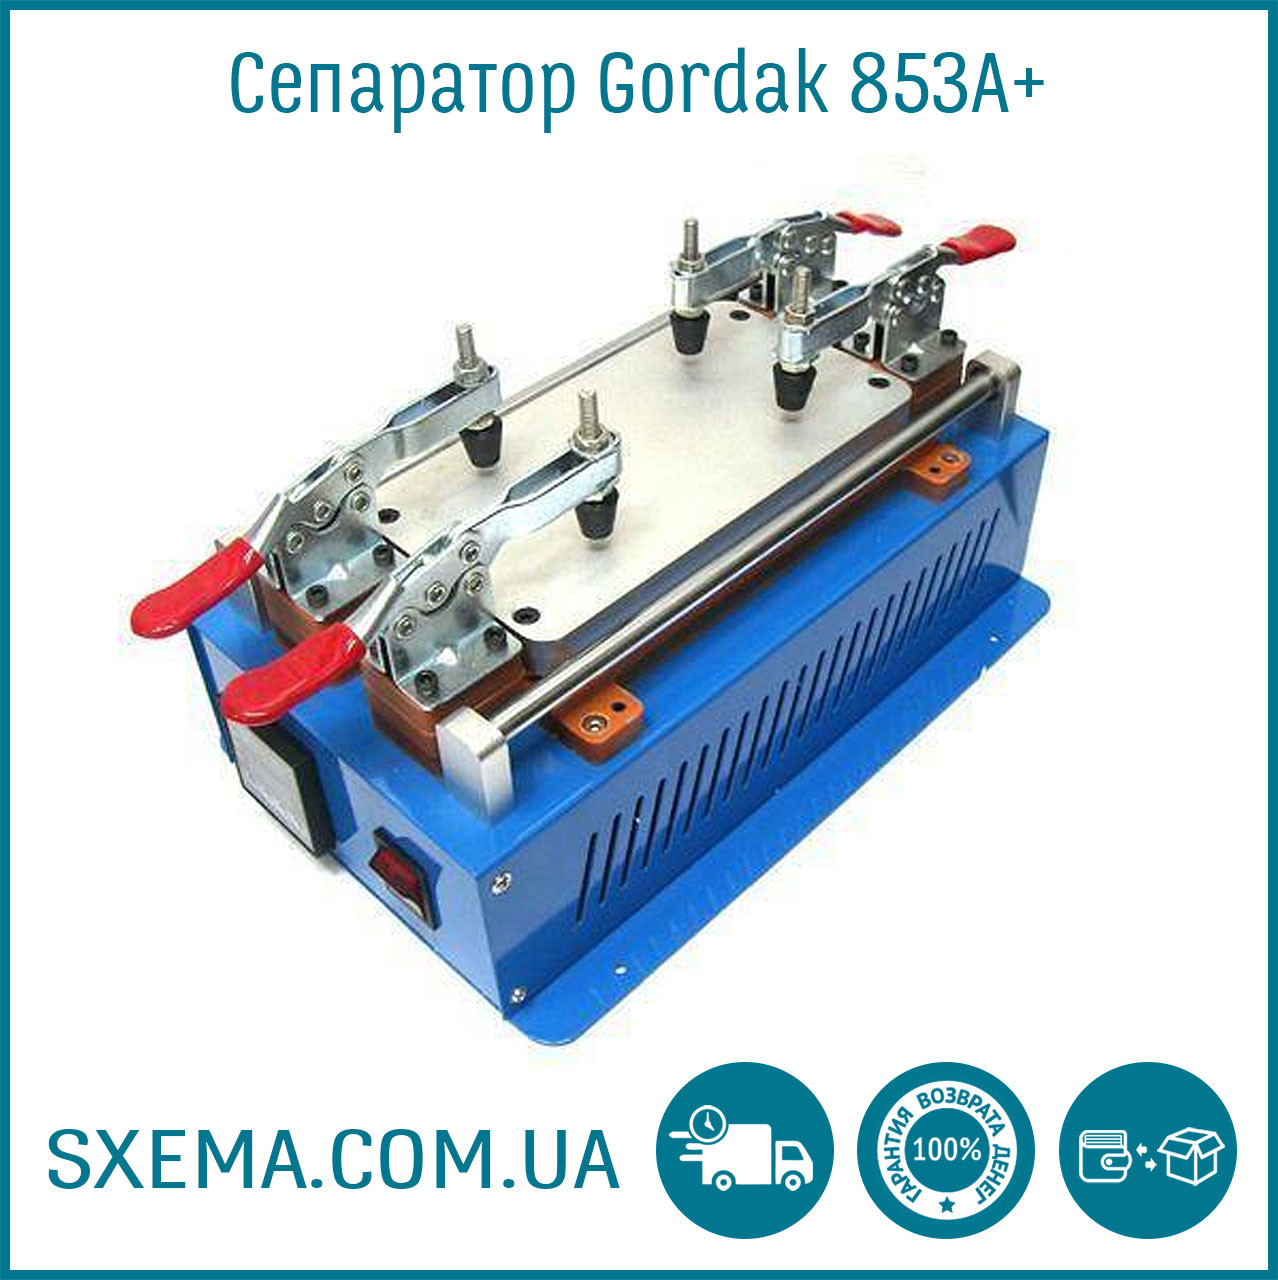 Сепаратор для дисплеїв Gordak 853A+ для поділу дисплейного модуля 200 × 100 мм.